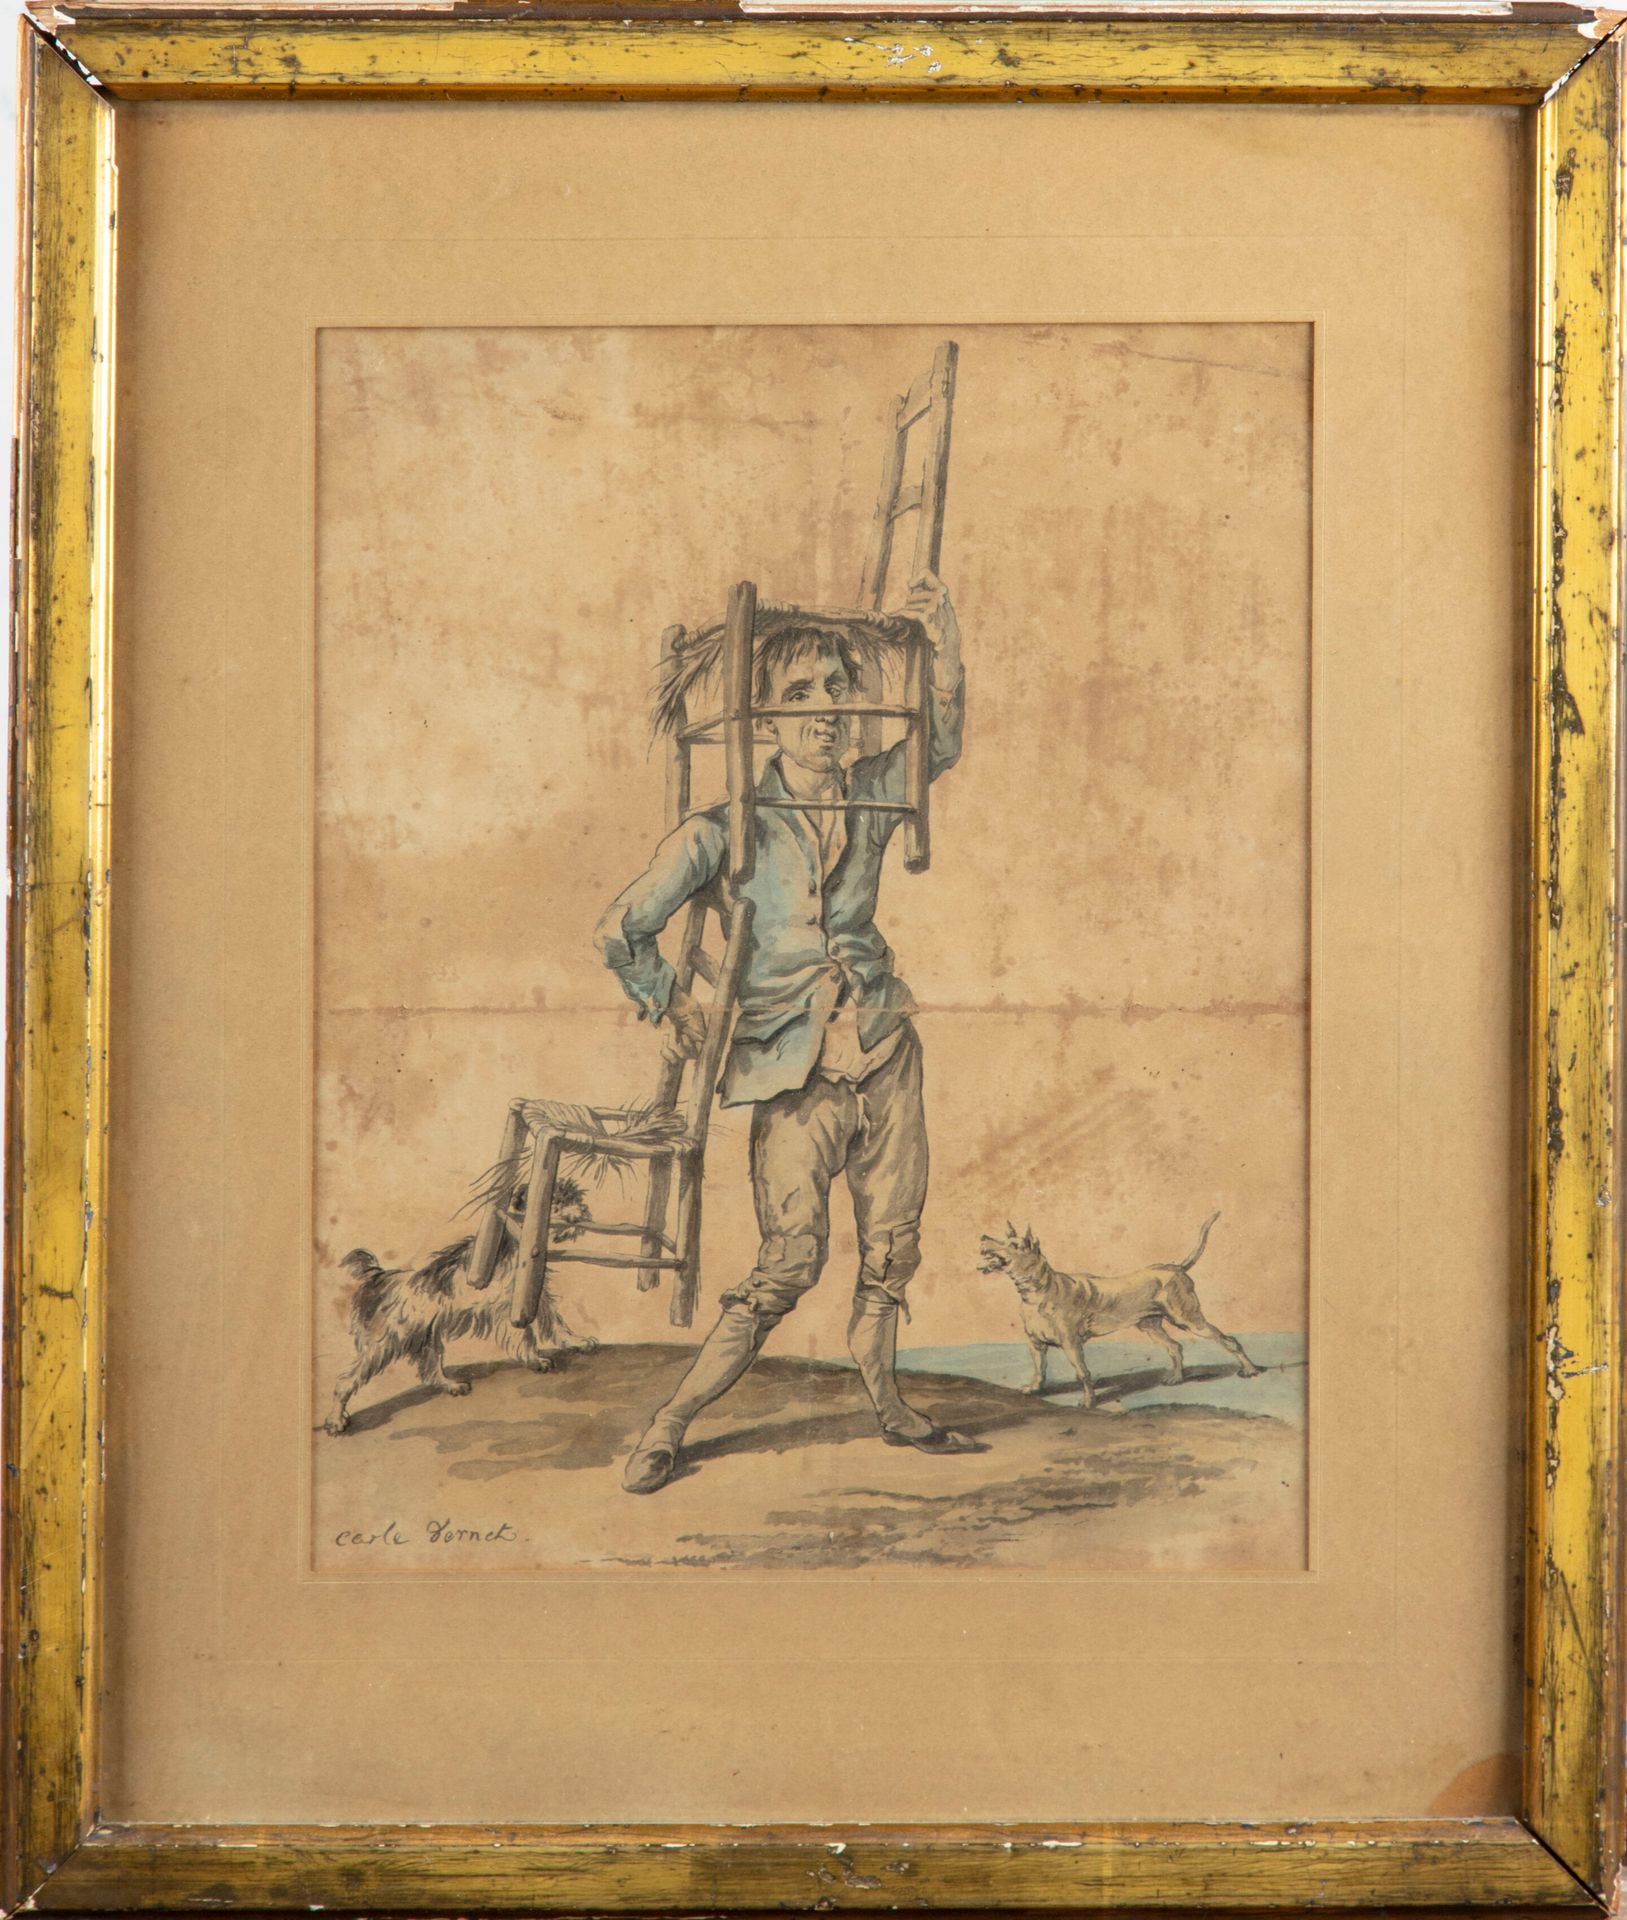 VERNET Carle VERNET (1758-1836)

Il ladro inseguito dai cani

Litografia firmata&hellip;